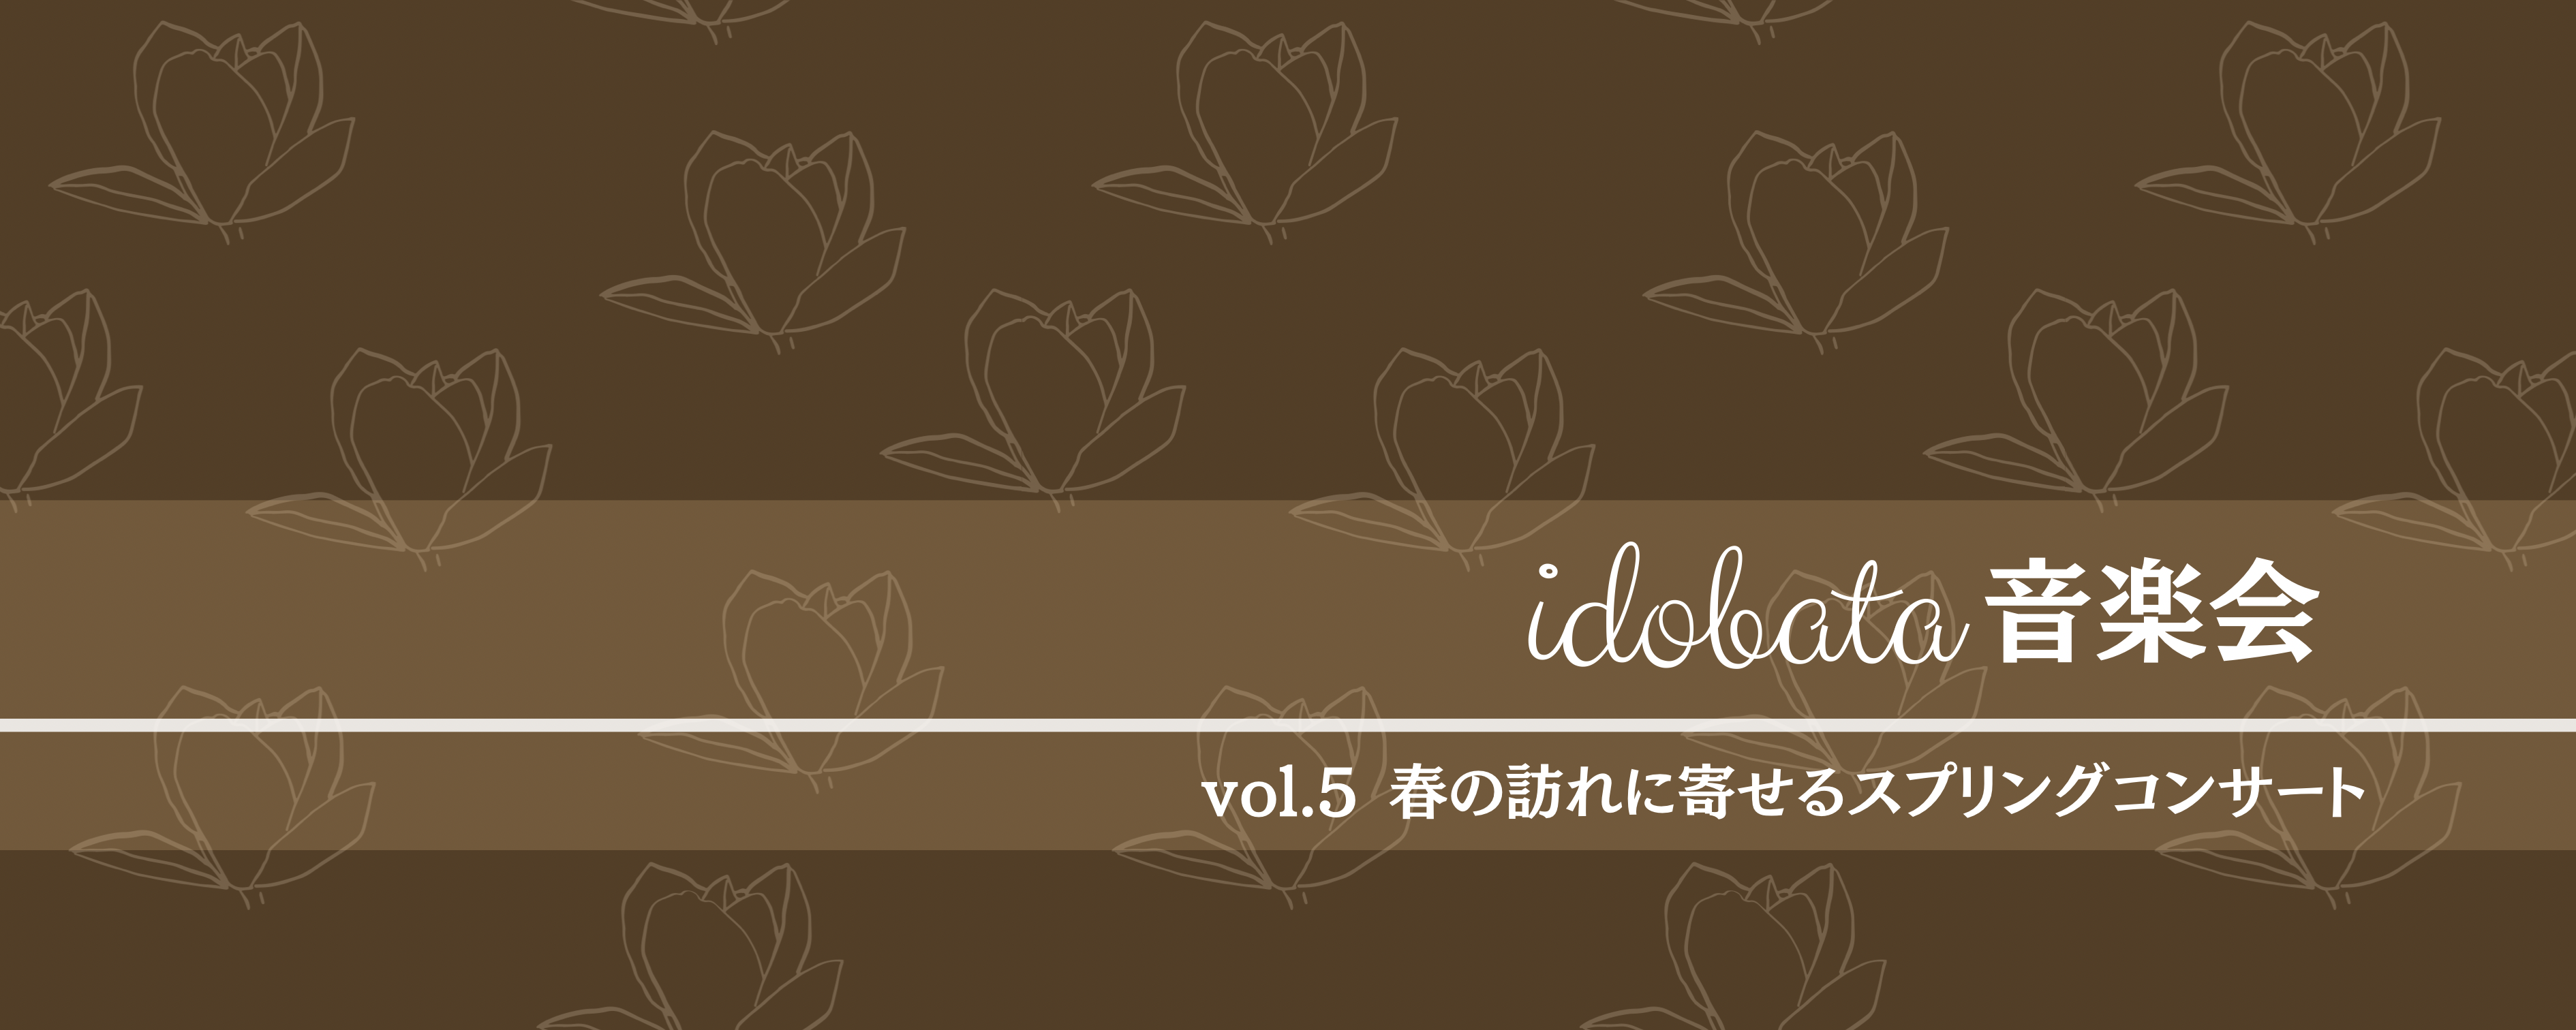 idobata音楽会vol.5 春の訪れに寄せるスプリングコンサート